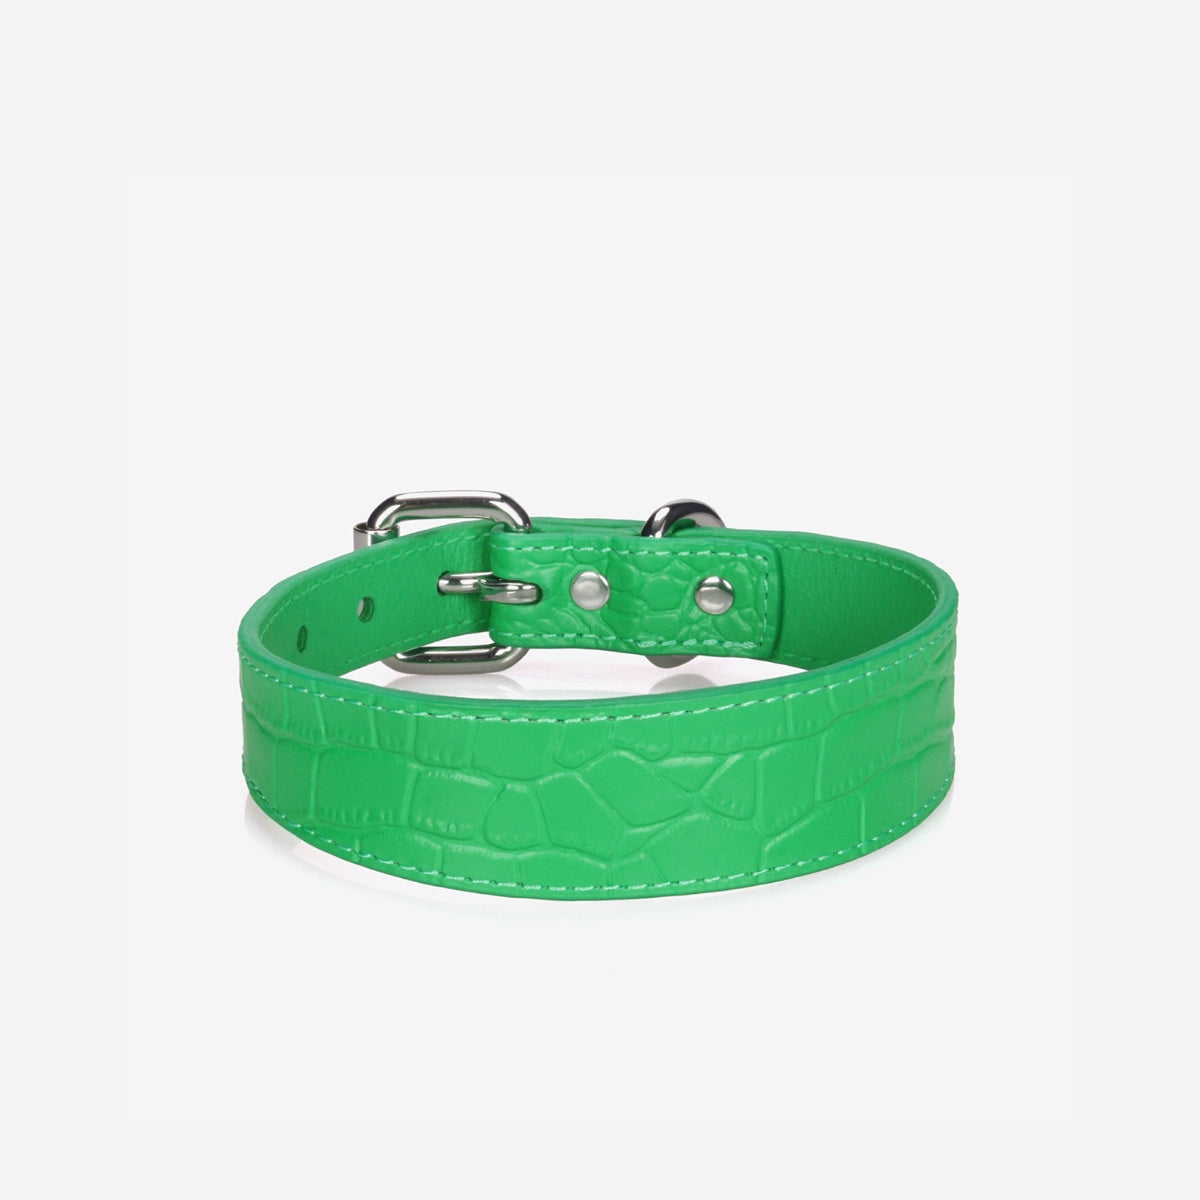 green-dog-collar-medium-thin.jpg